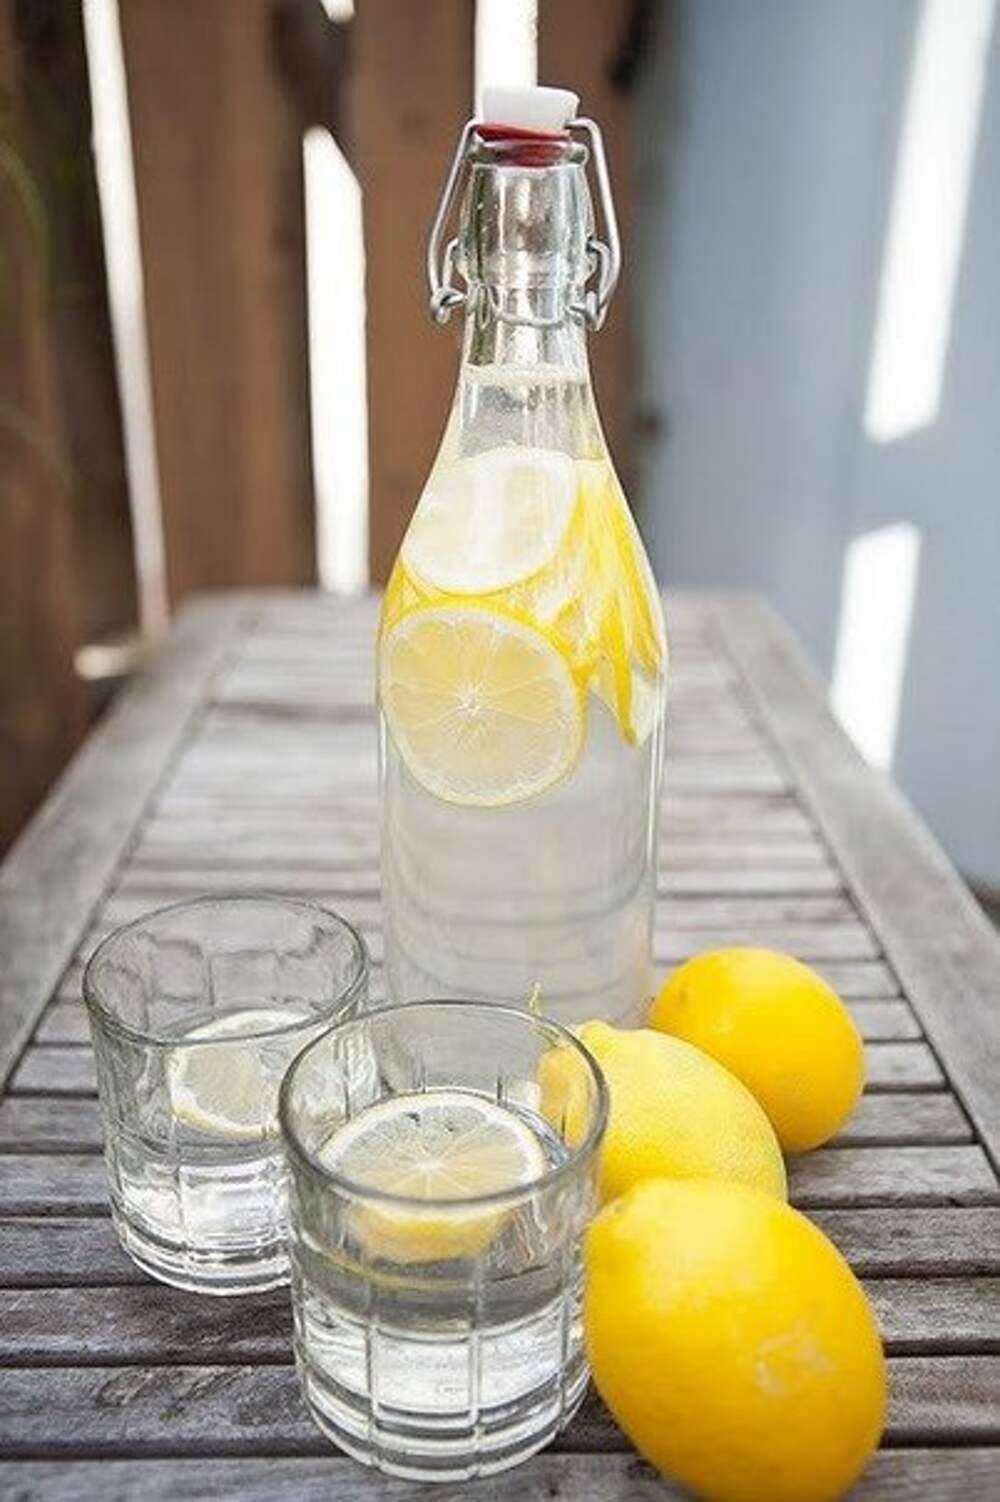 Питье вода с лимоном. Вода с лимоном. Стакан воды с лимоном. Вода с лимонным соком. Стакан с лимоном.